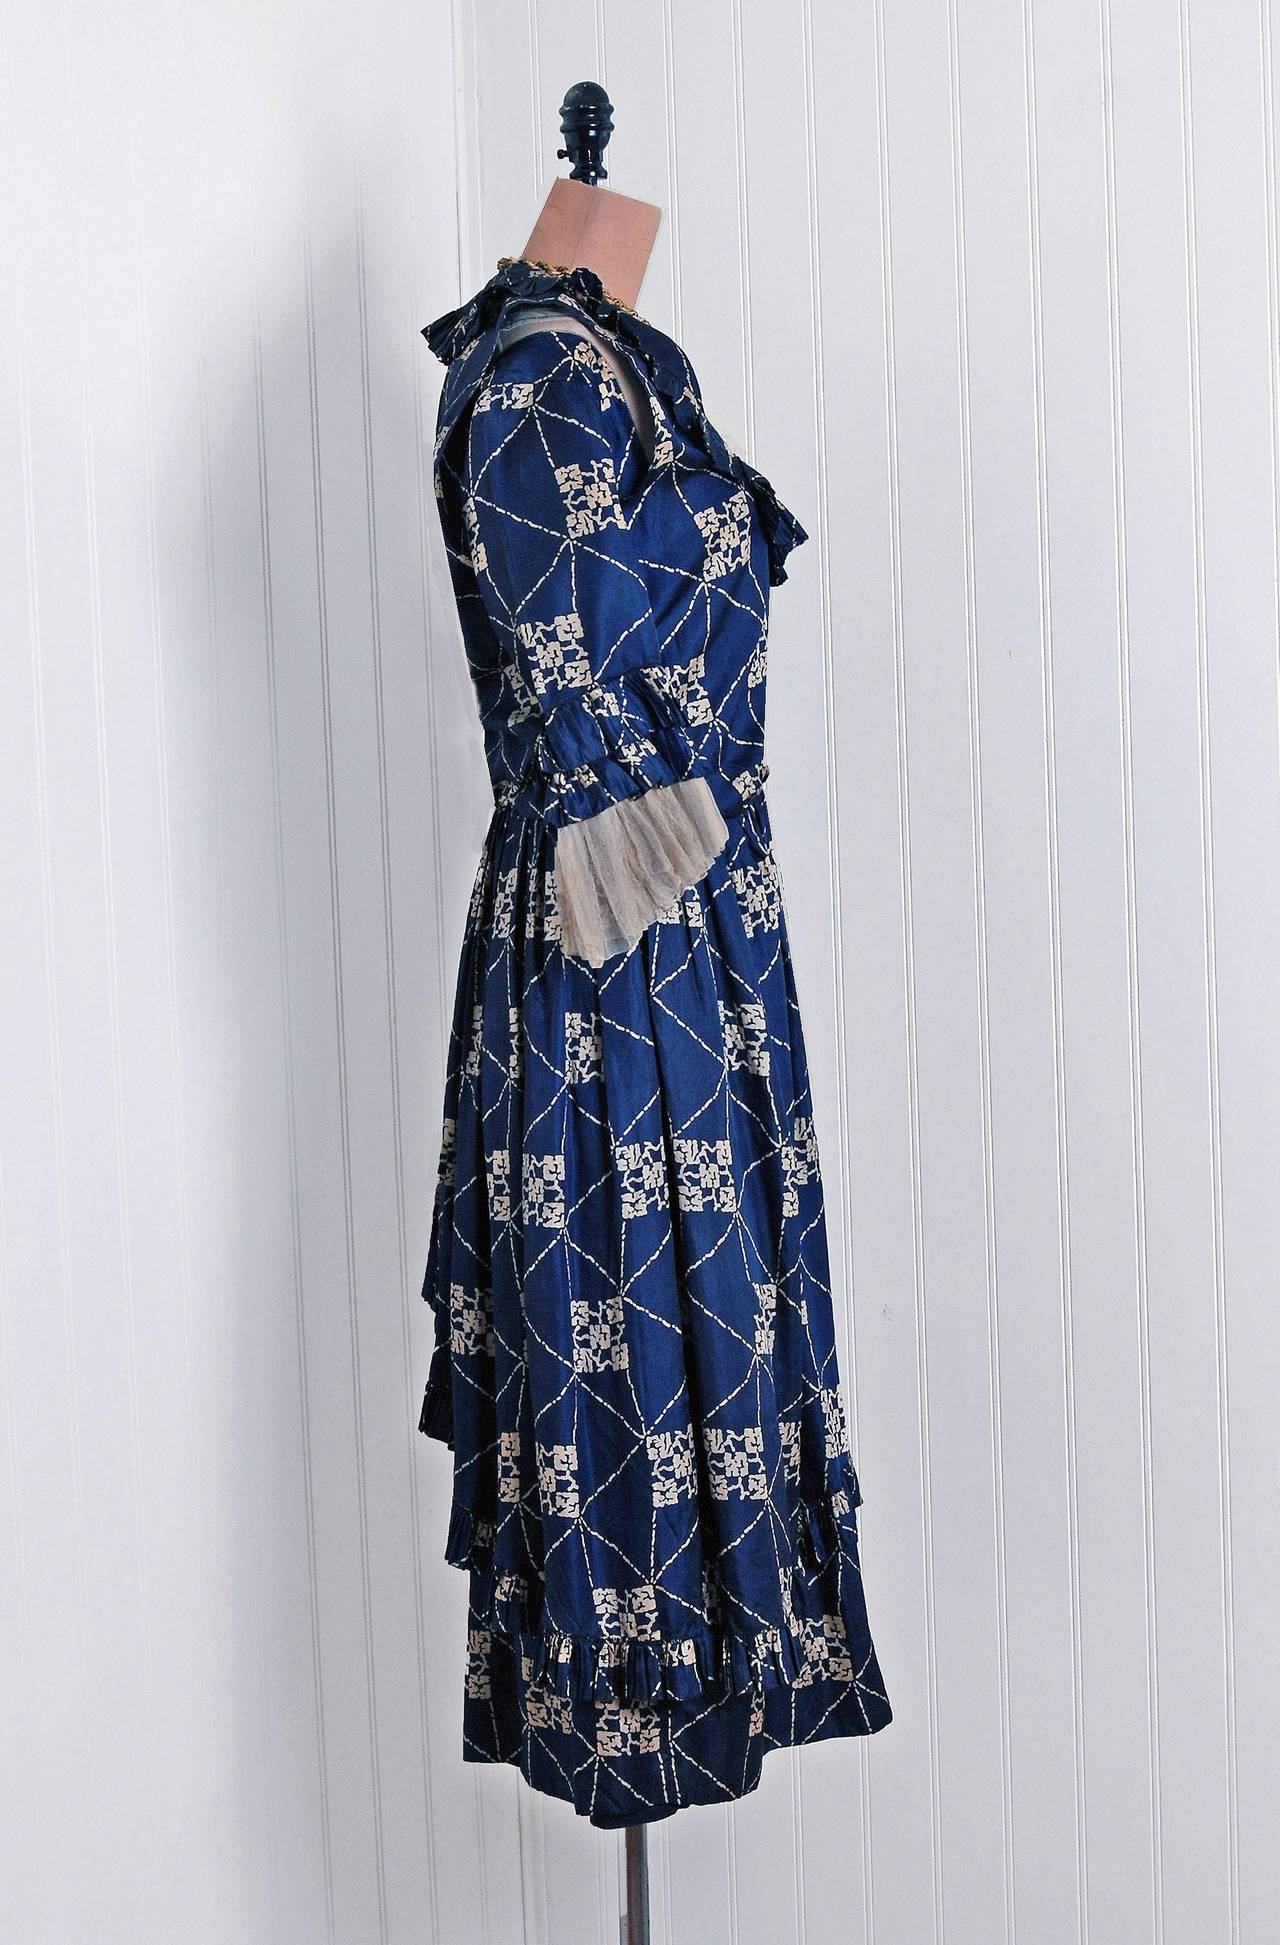 Magnifique robe de jour française des années 1920, confectionnée dans la plus belle soie bleu marine à imprimé déco. J'adore les accents de tulle ivoire et les magnifiques détails de couture. Le corsage est complété par un élégant col à bavette et